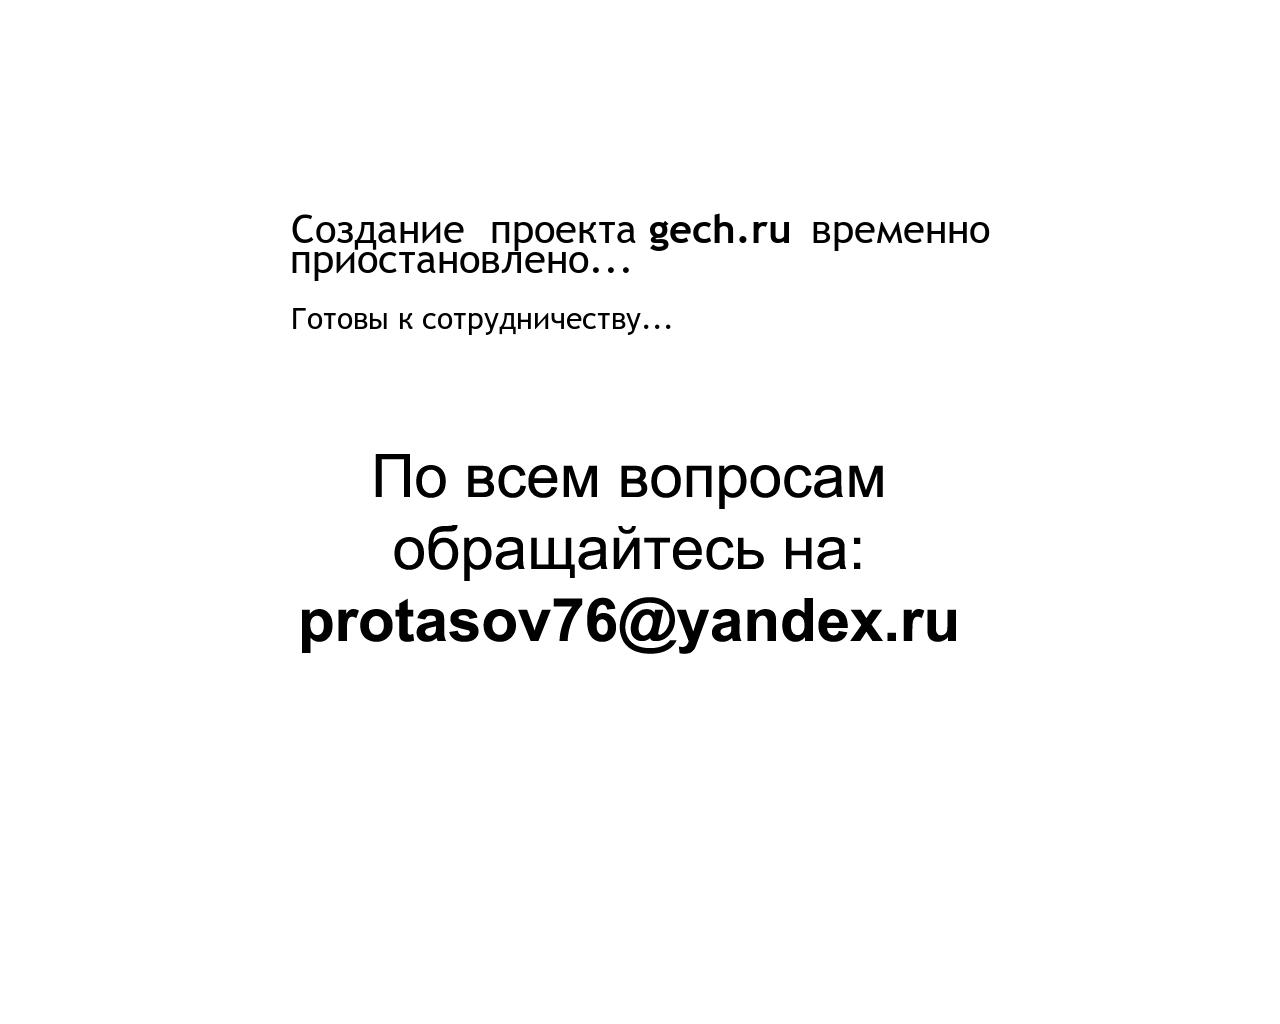 Изображение сайта gech.ru в разрешении 1280x1024